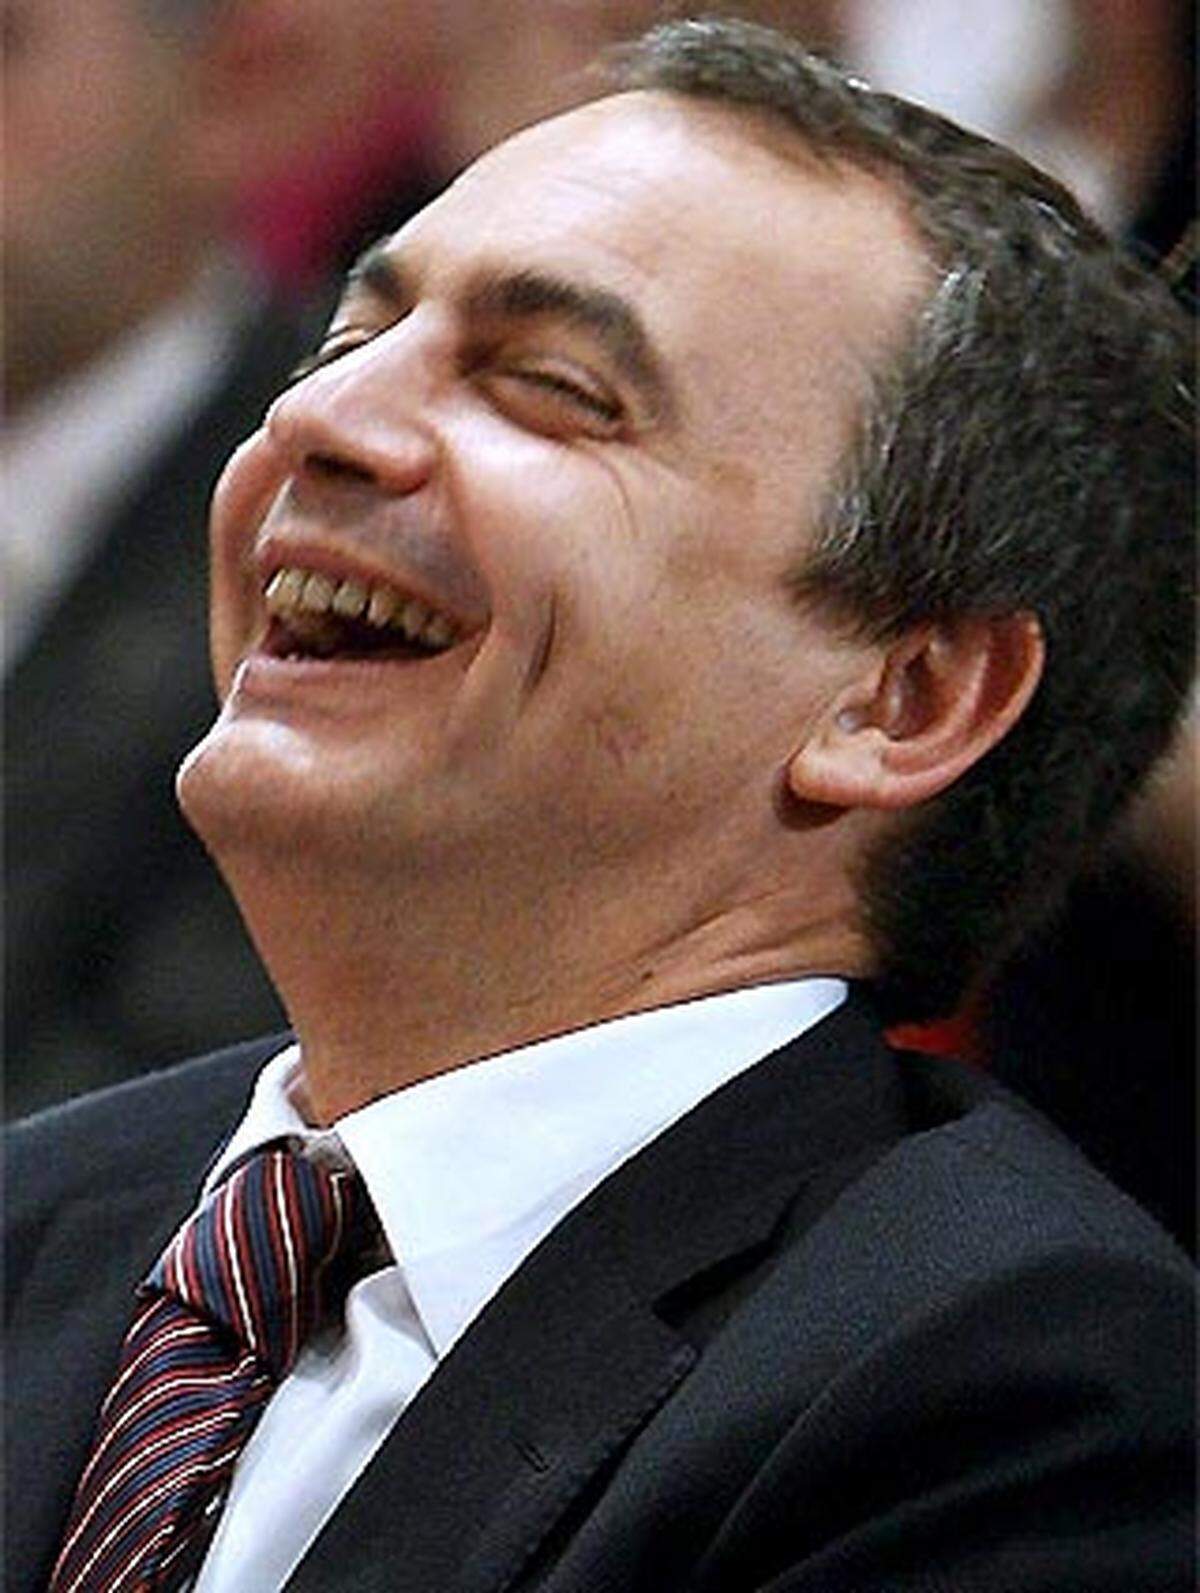 Viele Spanier empfanden Zapateros freundliche Art und seinen ruhigen neuen Politikstil als angenehme Erholung zum aggressiven Amtsvorgänger Jose Maria Aznar.